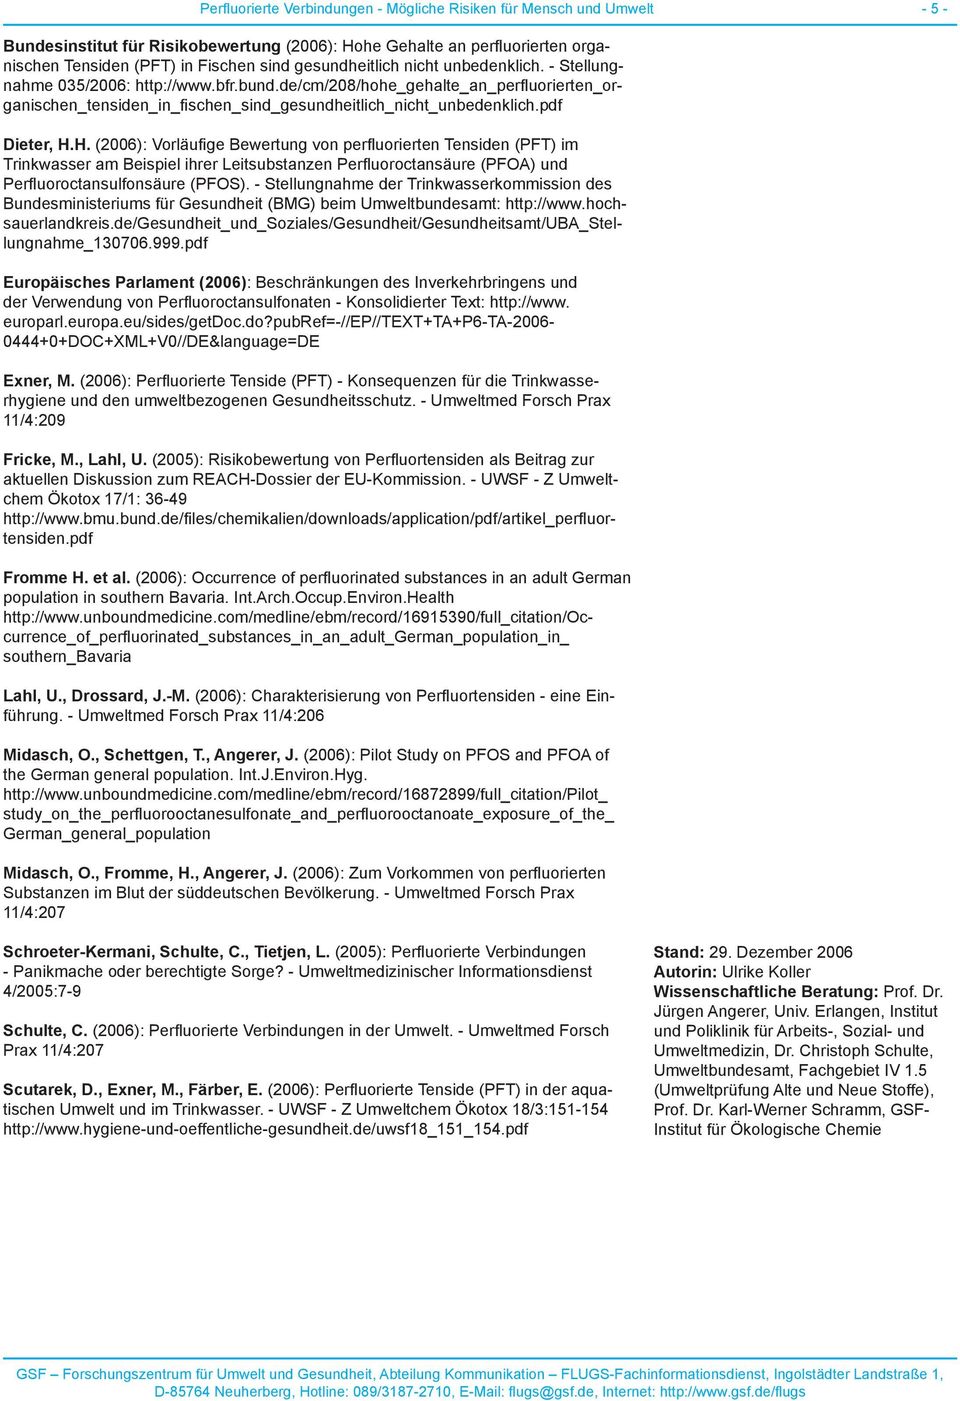 pdf Dieter, H.H. (2006): Vorläufige Bewertung von perfluorierten Tensiden (PFT) im Trinkwasser am Beispiel ihrer Leitsubstanzen Perfluoroctansäure (PFOA) und Perfluoroctansulfonsäure (PFOS).